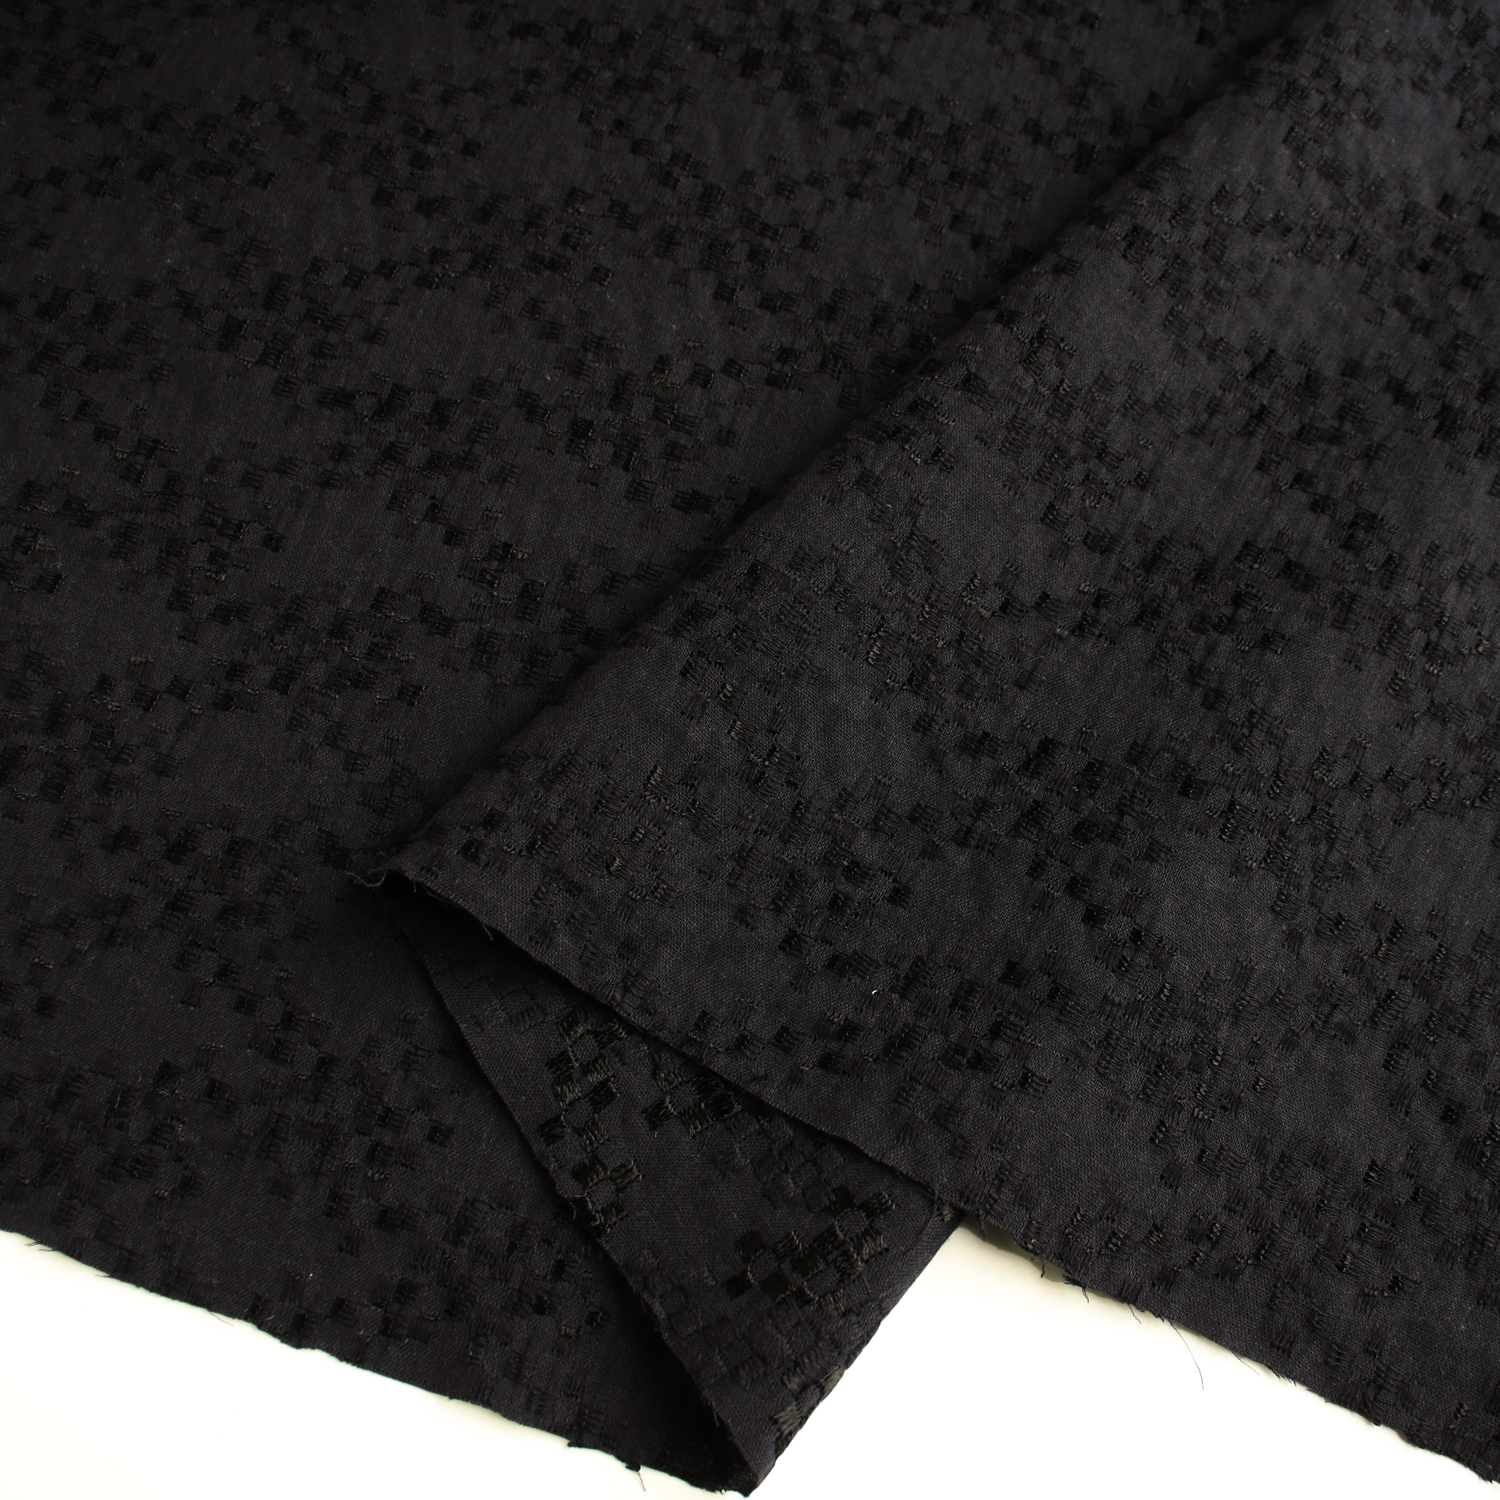 AL566-5039 cotton lace fabric, Width 100cm, 1m/unit (m)